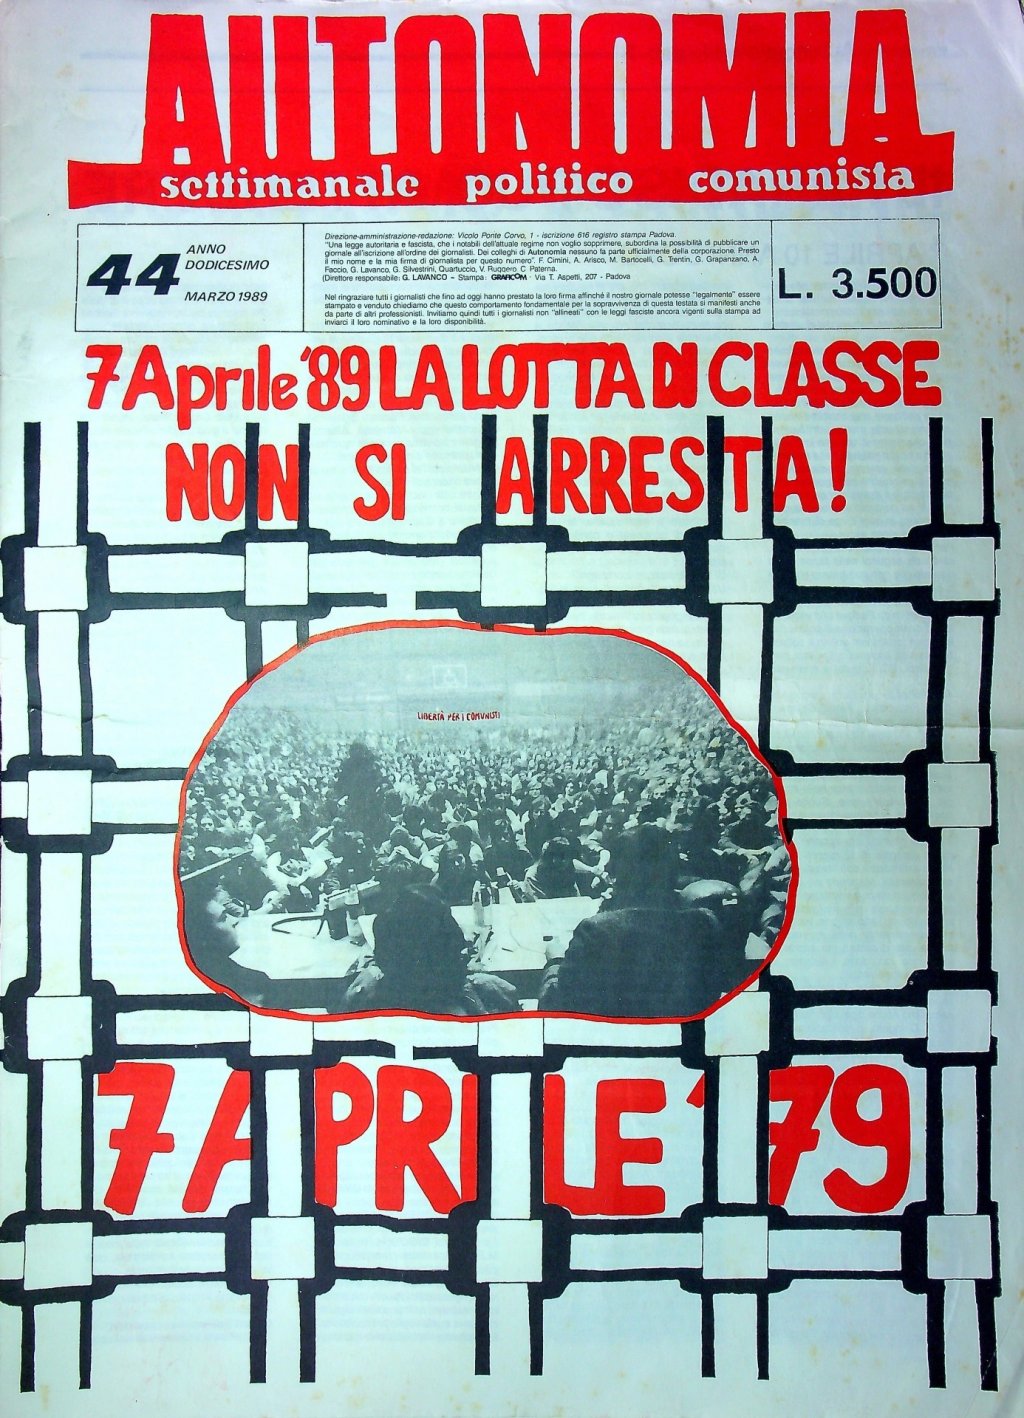 Copertina Settimanale Autonomia - marzo 1989